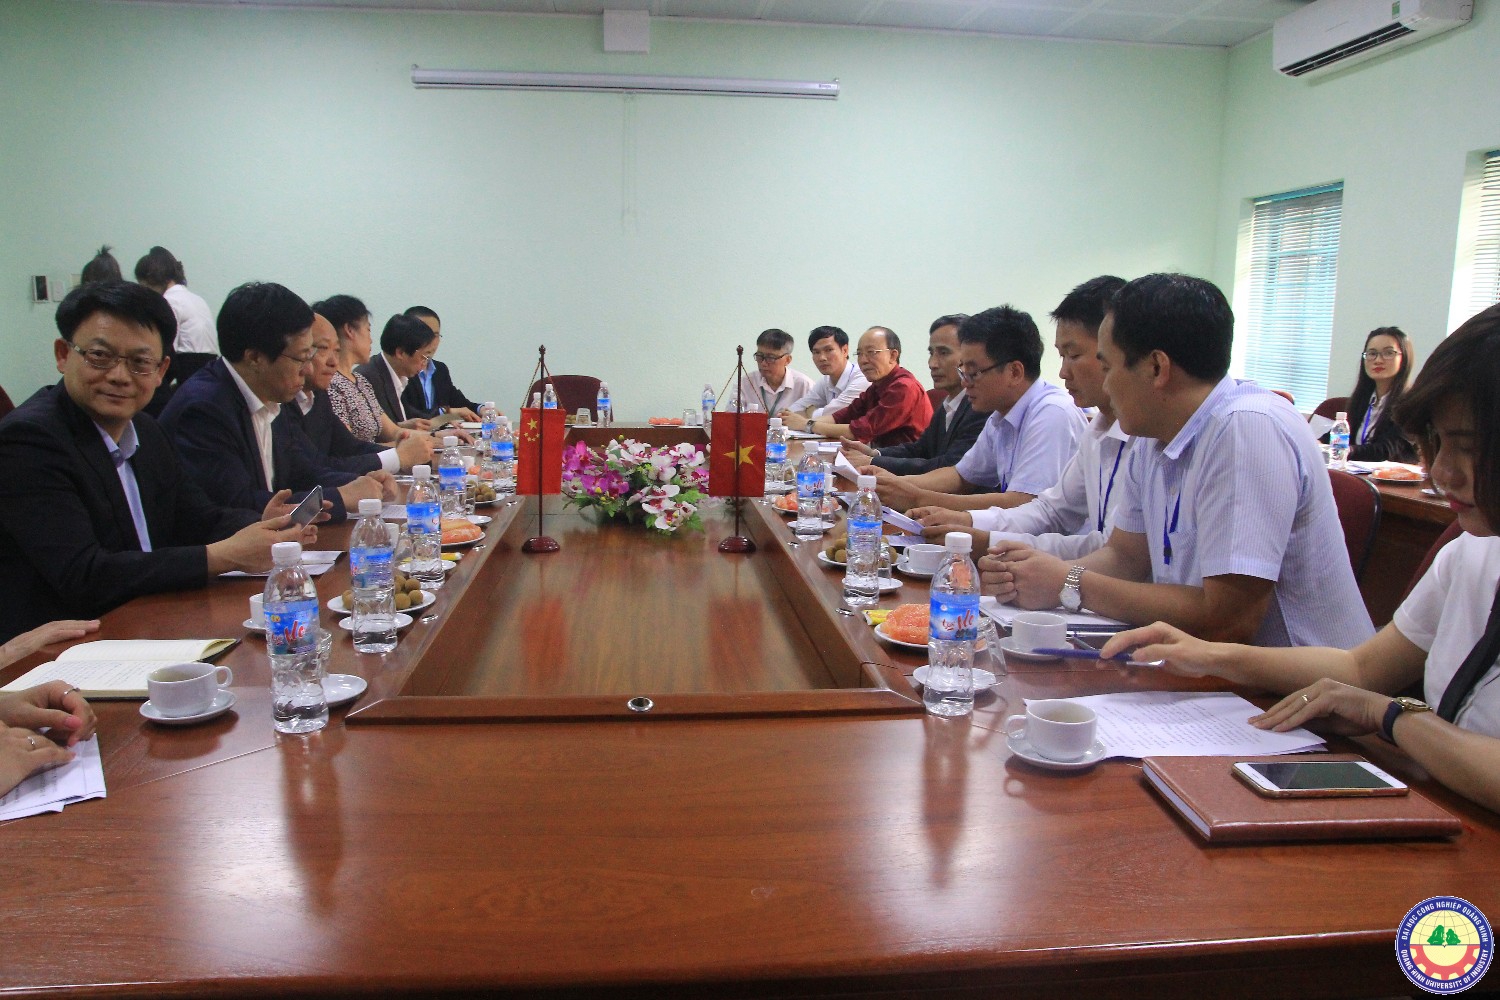 Đoàn đại biểu Đại học Công nghệ Liêu Ninh Trung Quốc sang thăm và làm việc với trường ta